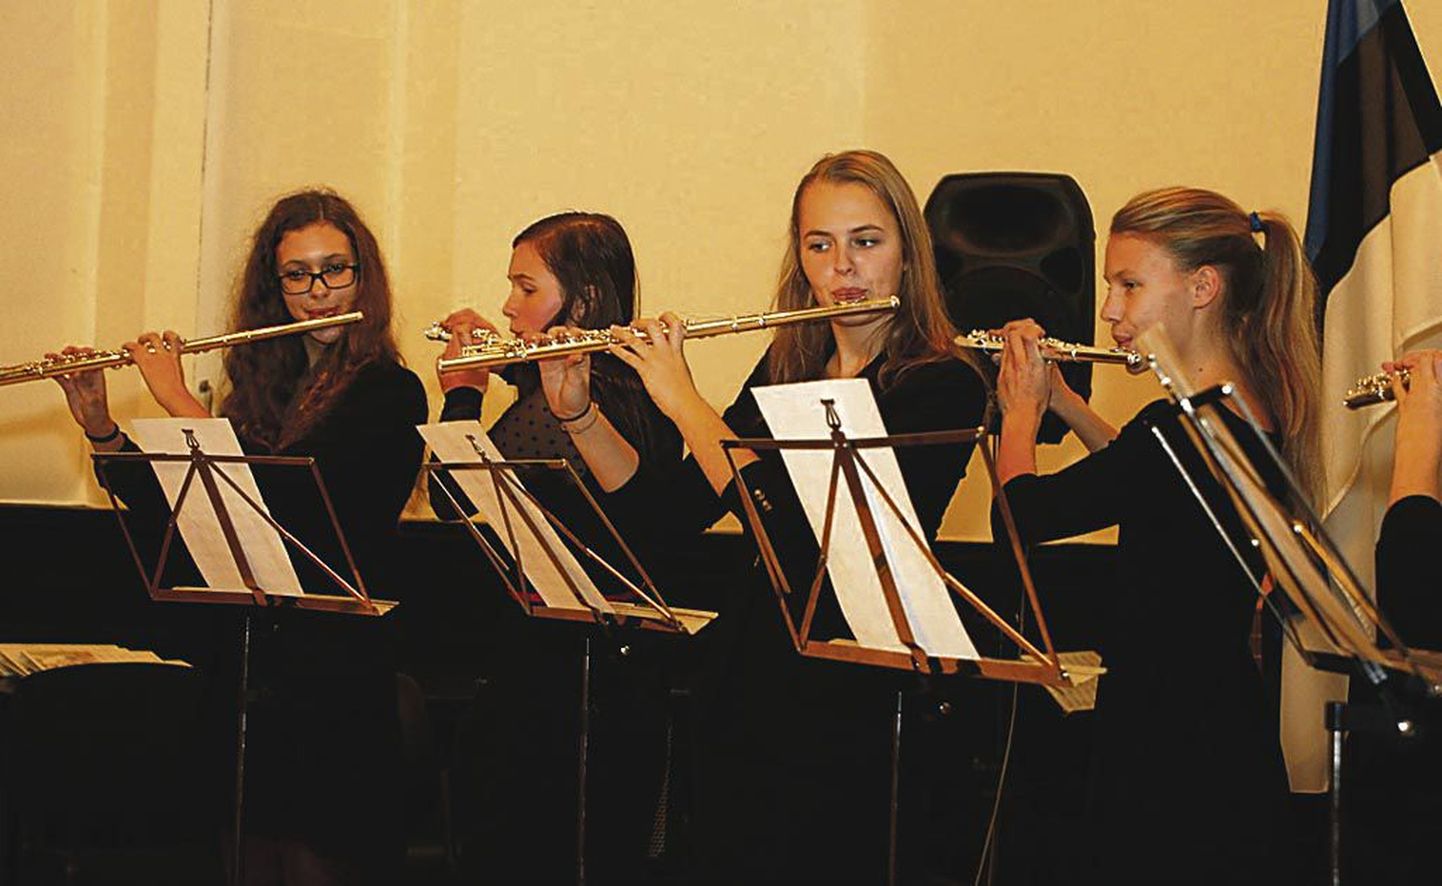 Ühiskontserdil esines Pärnu muusikakooli flöödiansambel (juhendaja Marju Mäe).